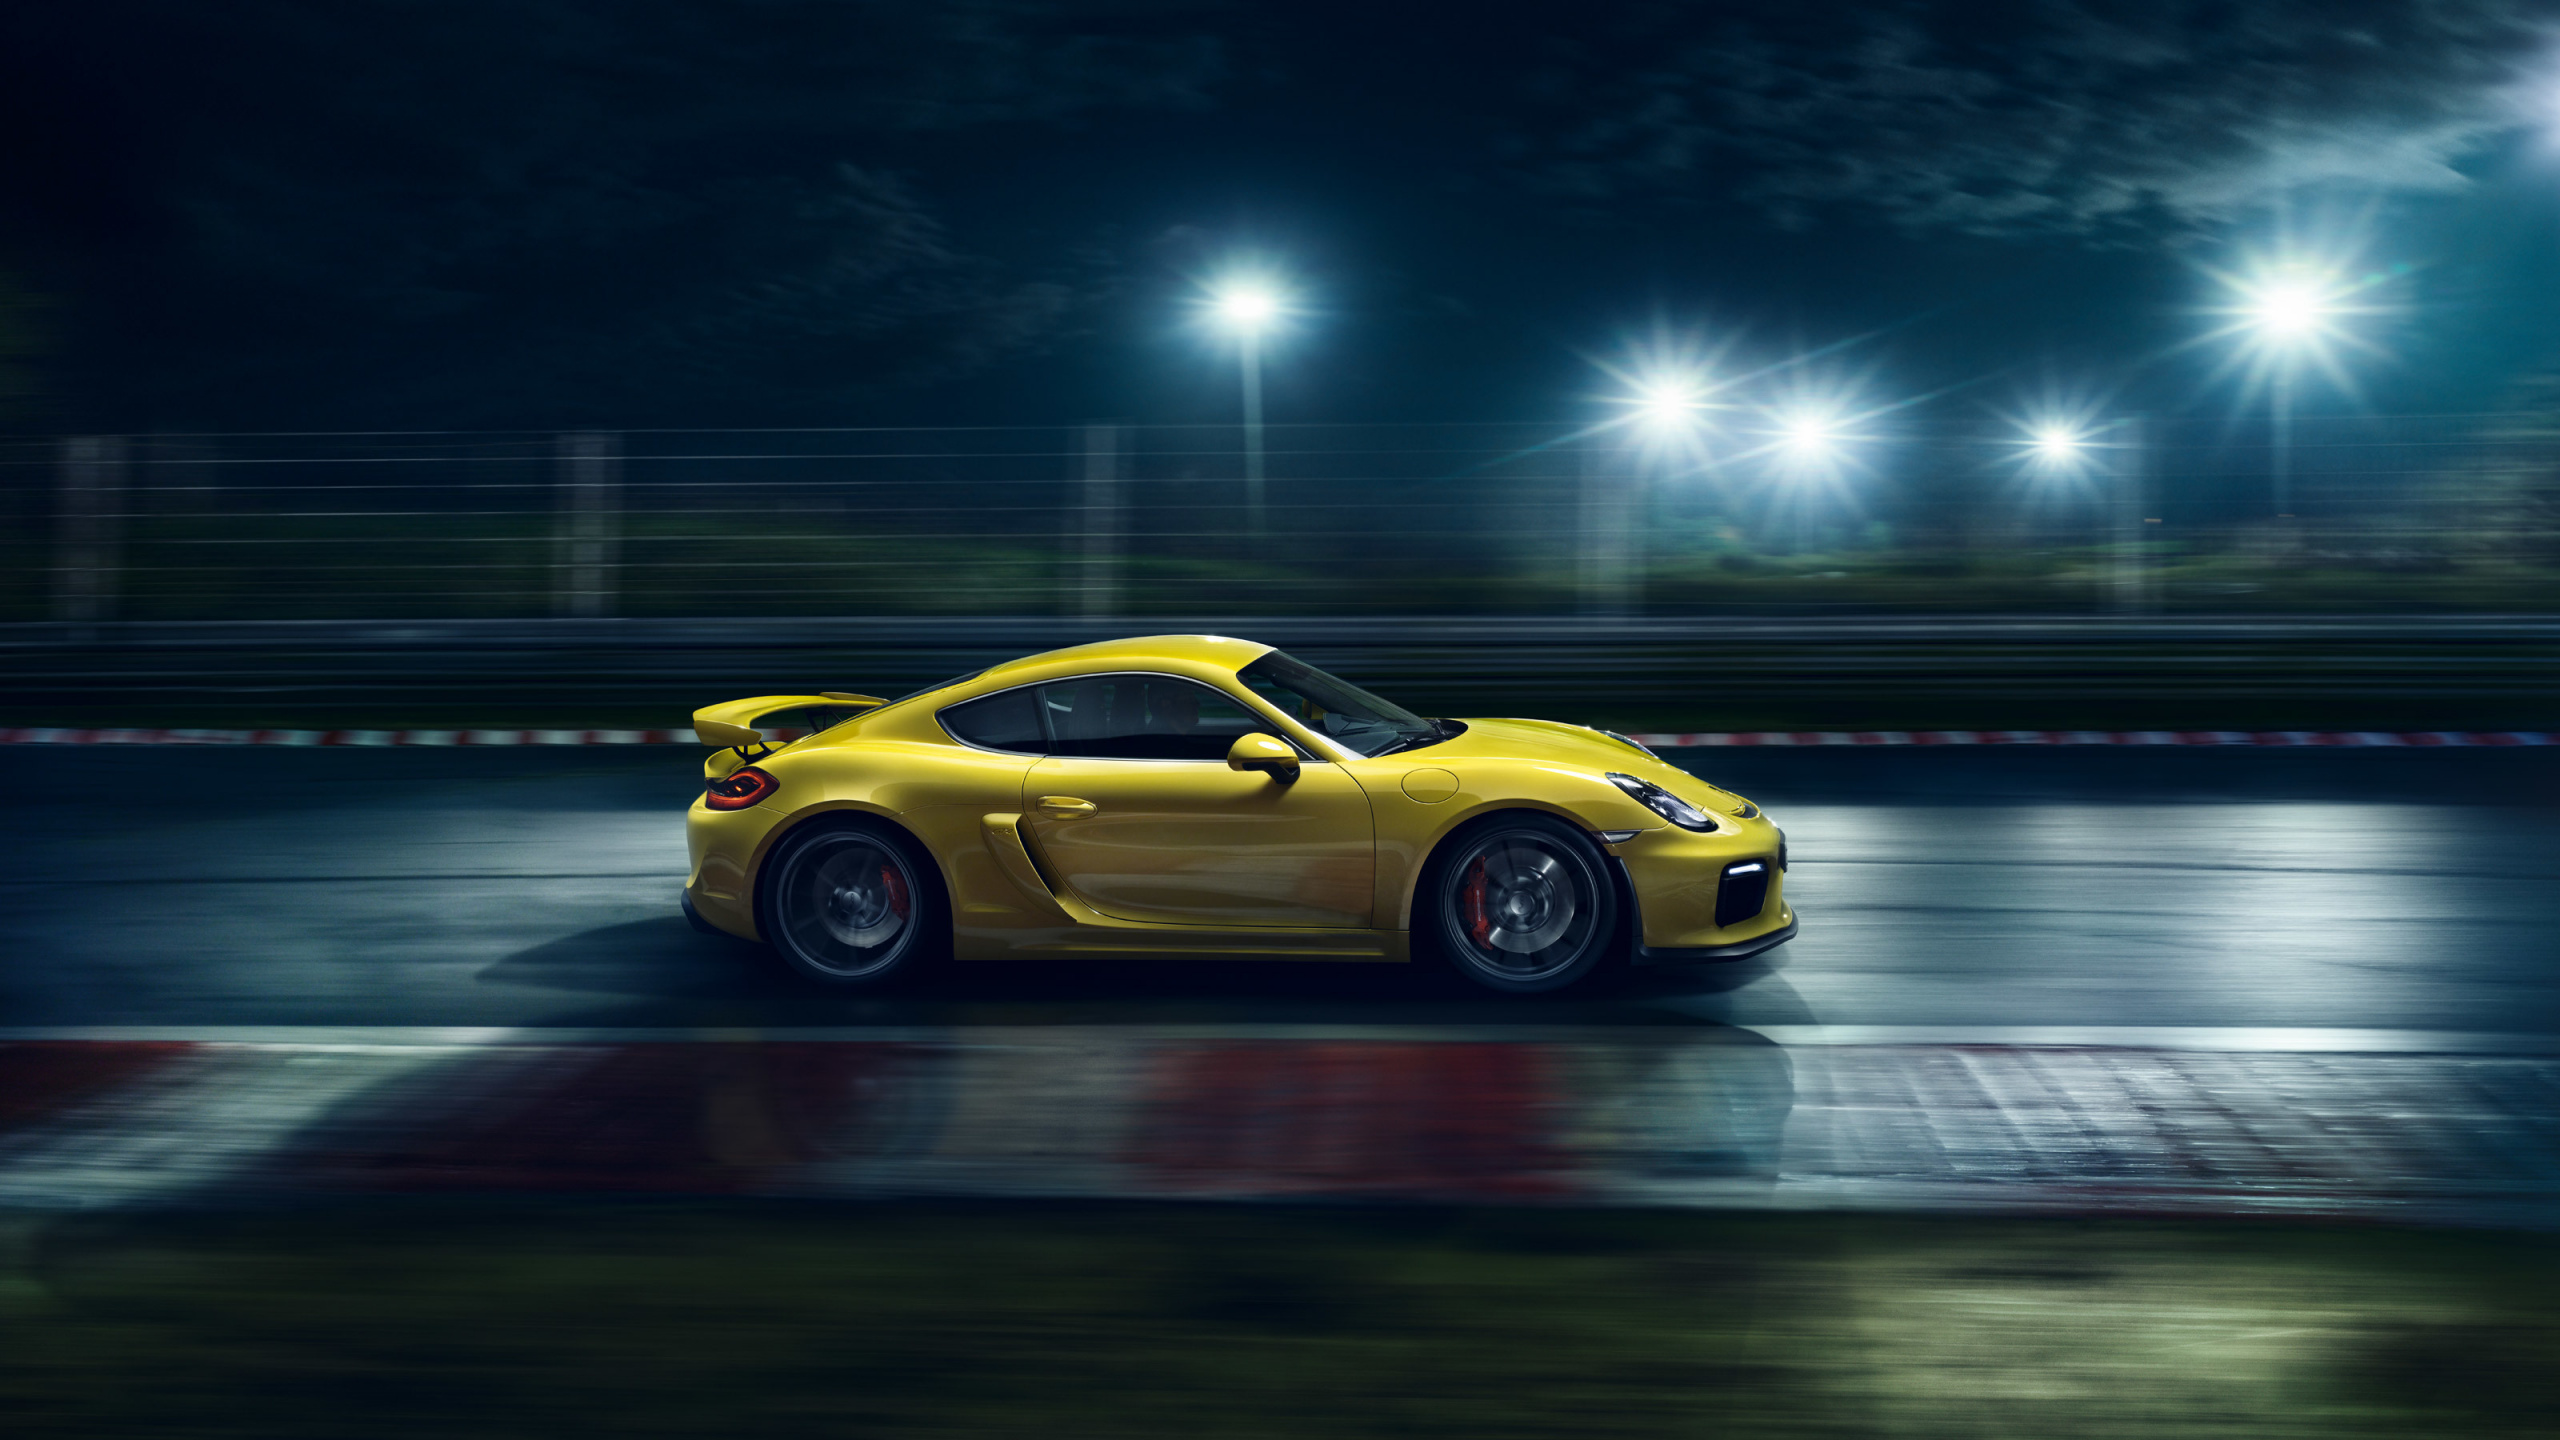 Gelber Porsche 911 Nachts Unterwegs. Wallpaper in 2560x1440 Resolution